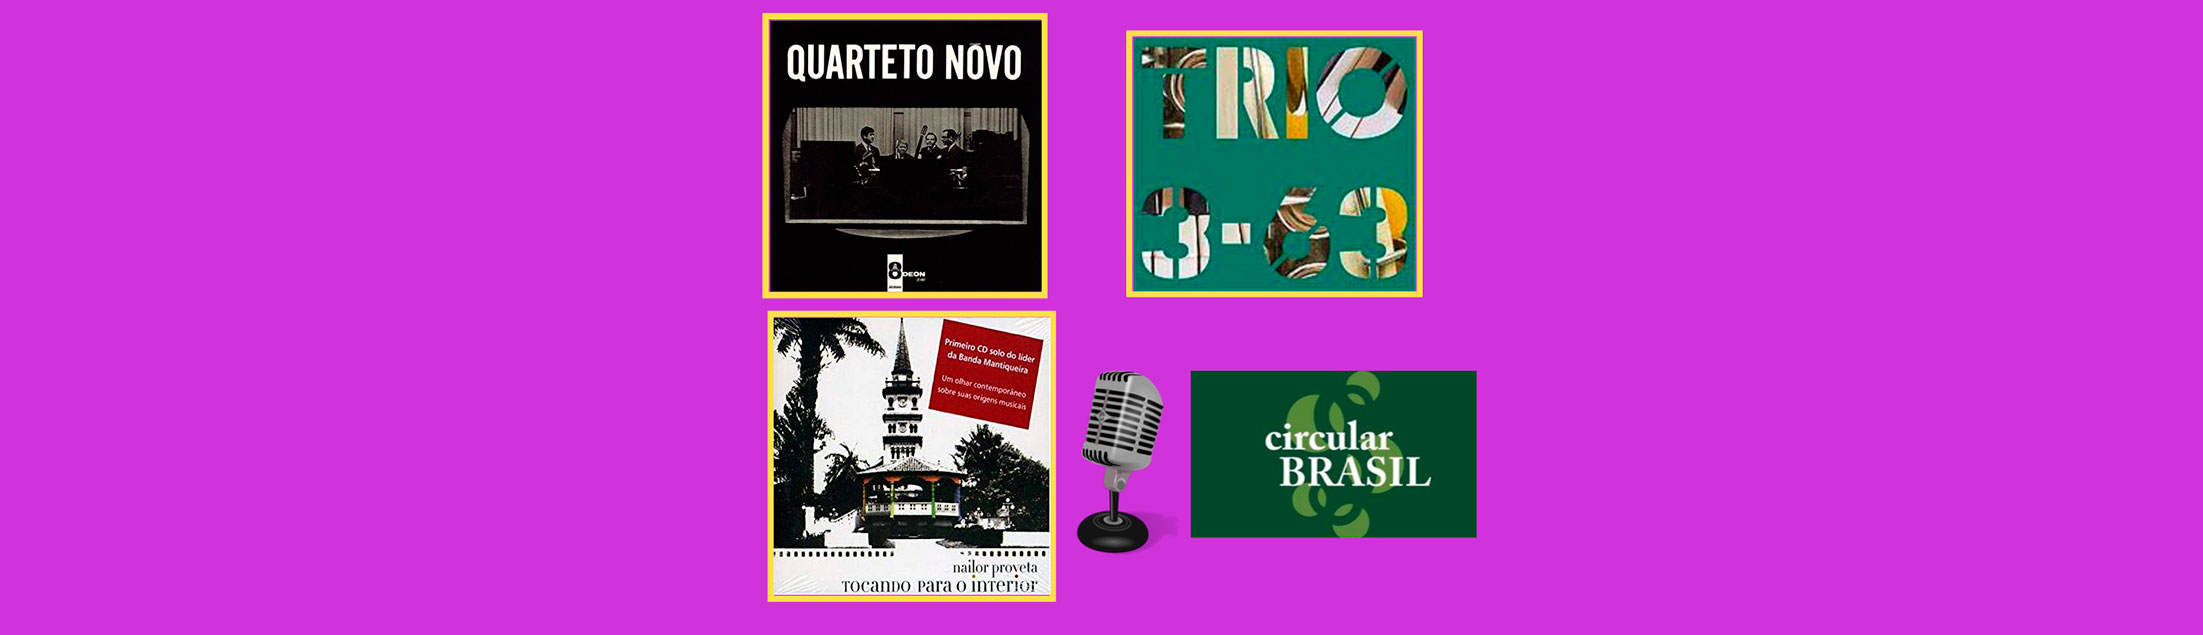 2 atrações atuais e um registro histórico no Circular Brasil dessa semana